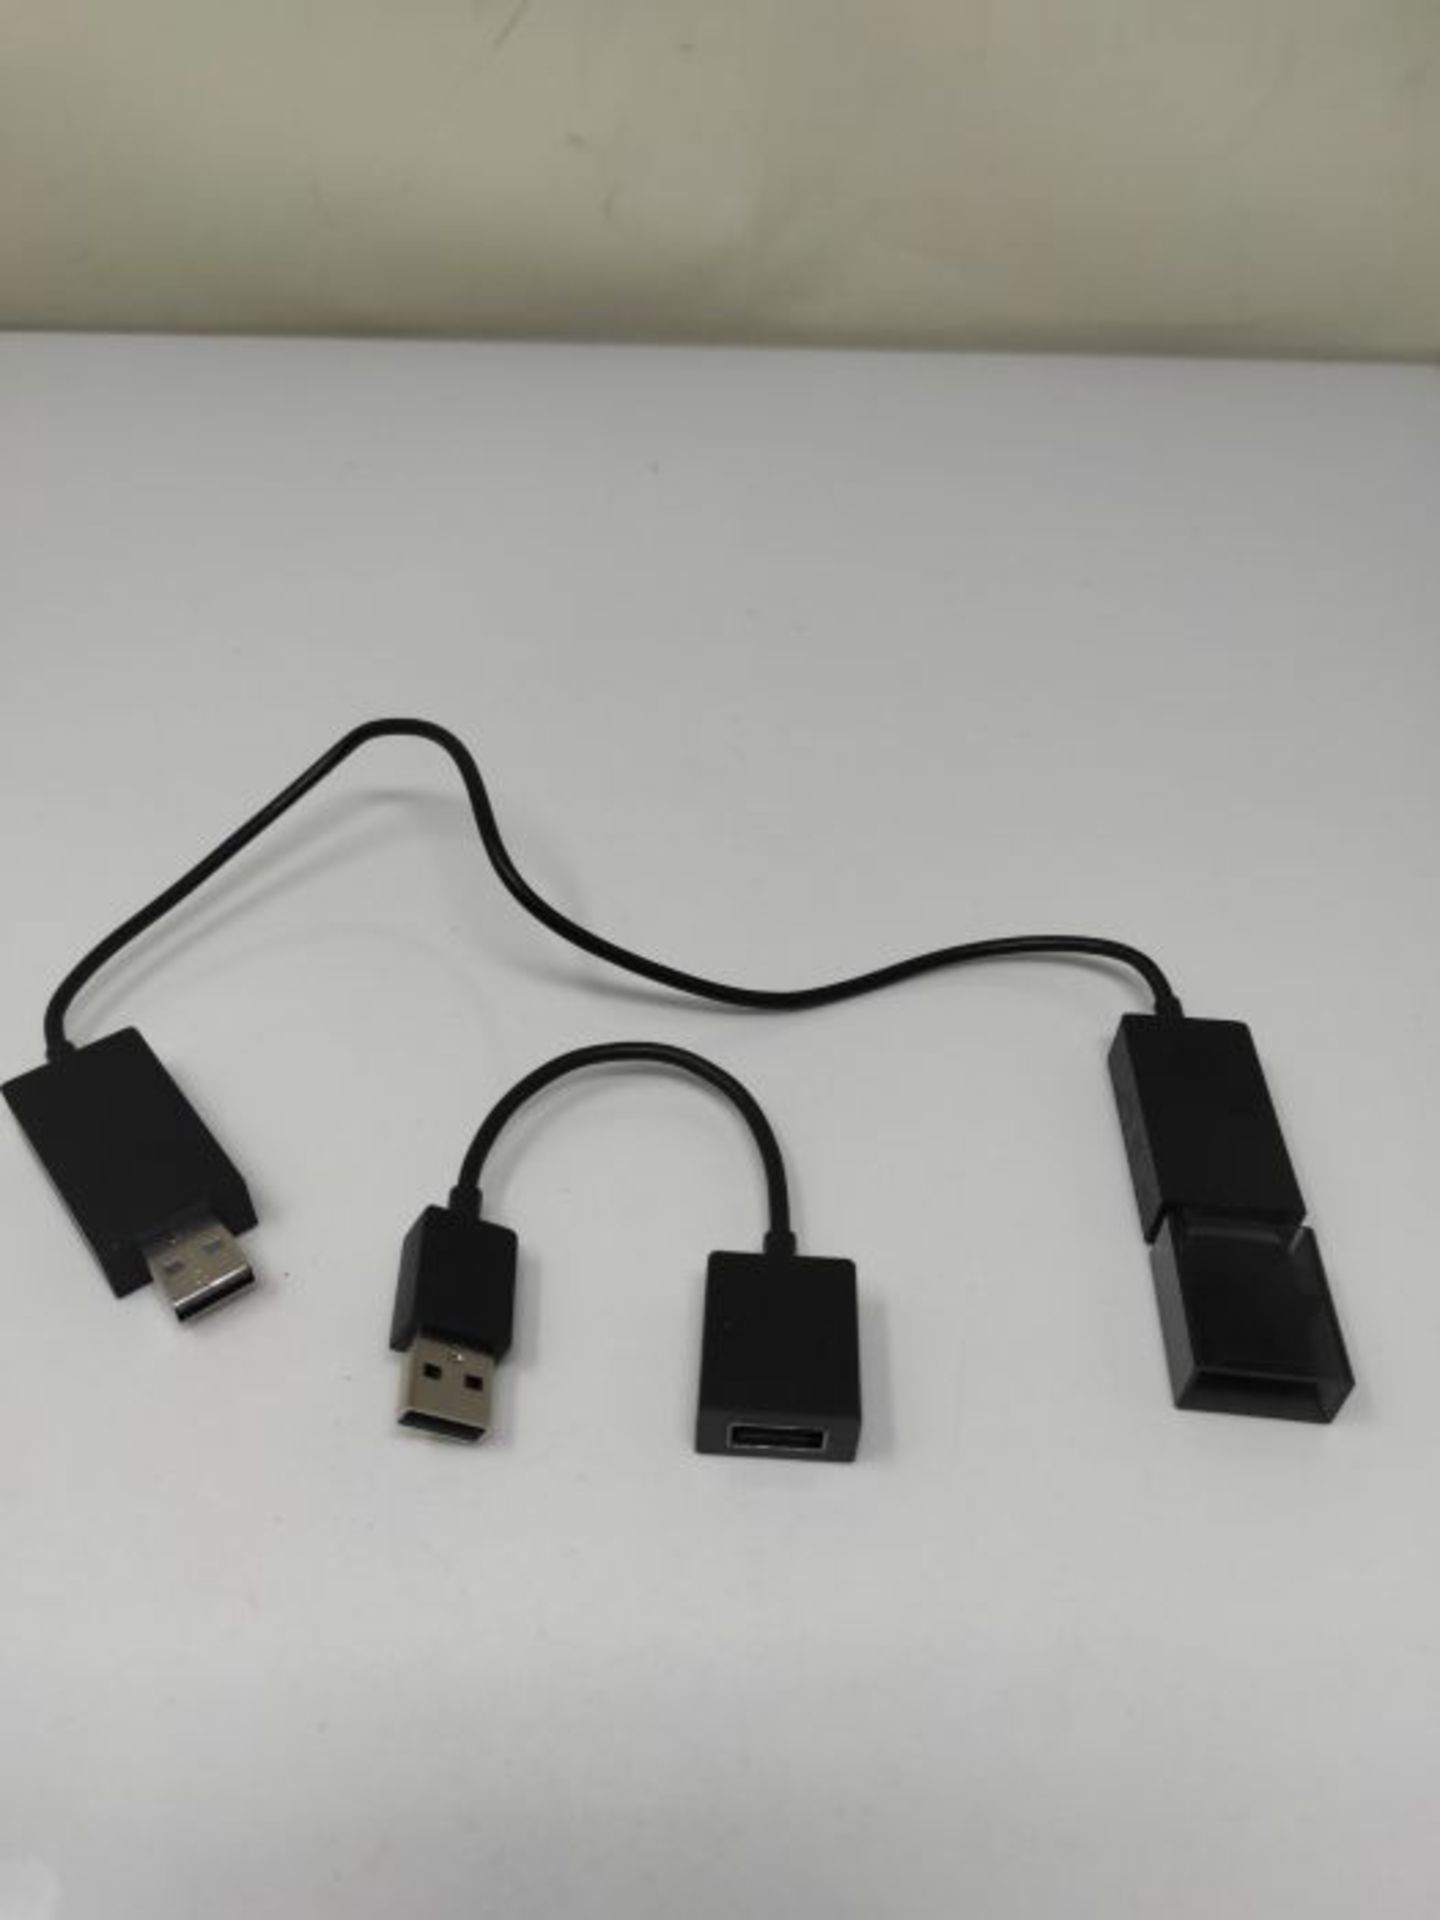 Microsoft Wireless Display Adapter (2. Version, Adapter zur kabellosen Bildschirmüber - Image 2 of 2